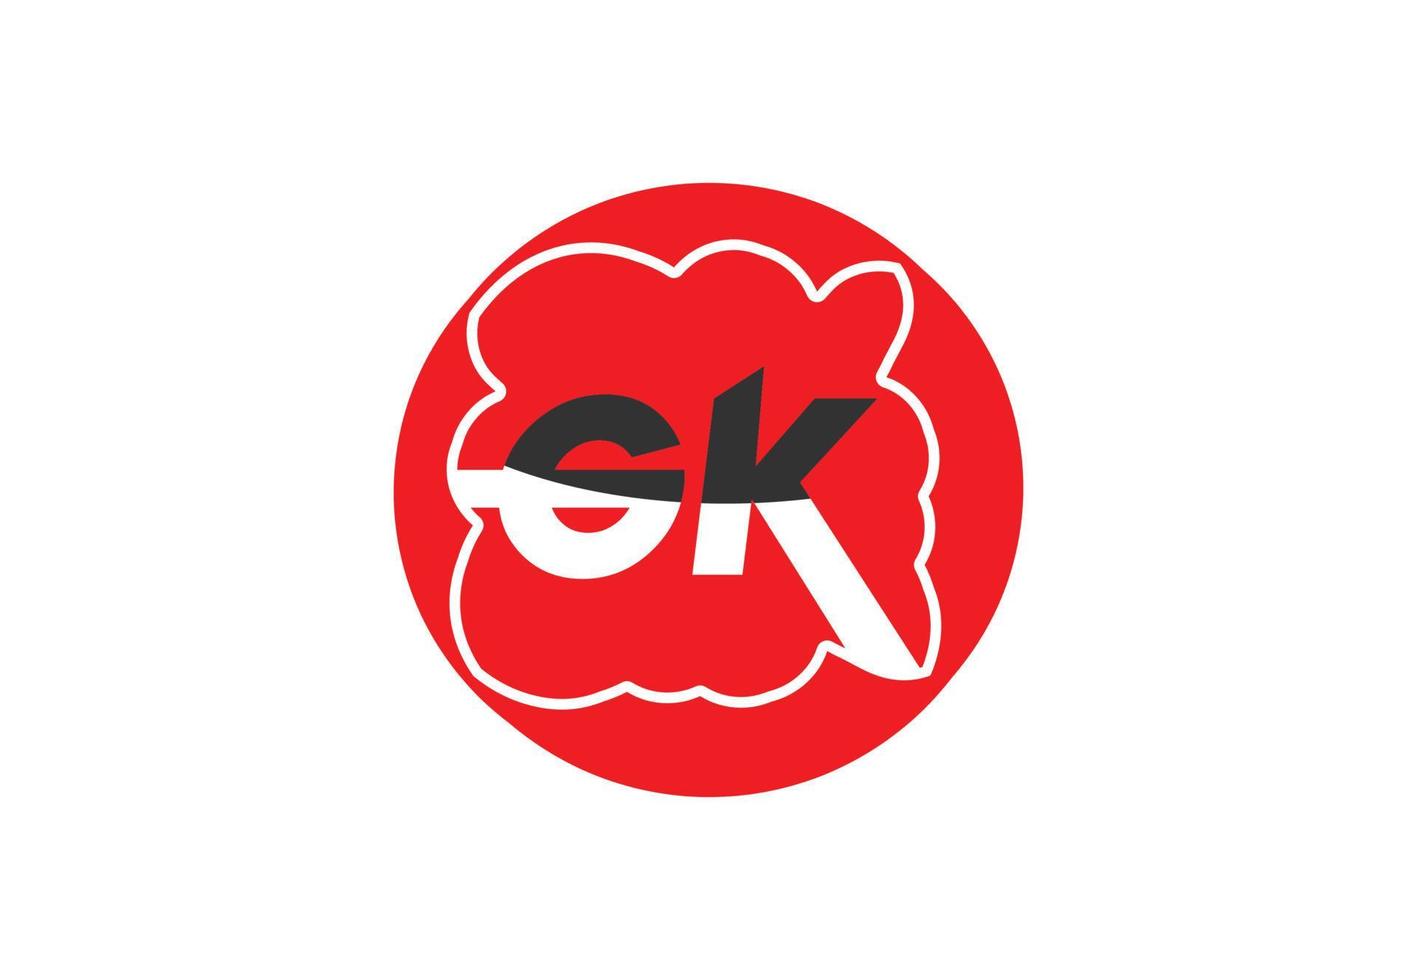 gk-Brief-Logo und Icon-Design-Vorlage vektor